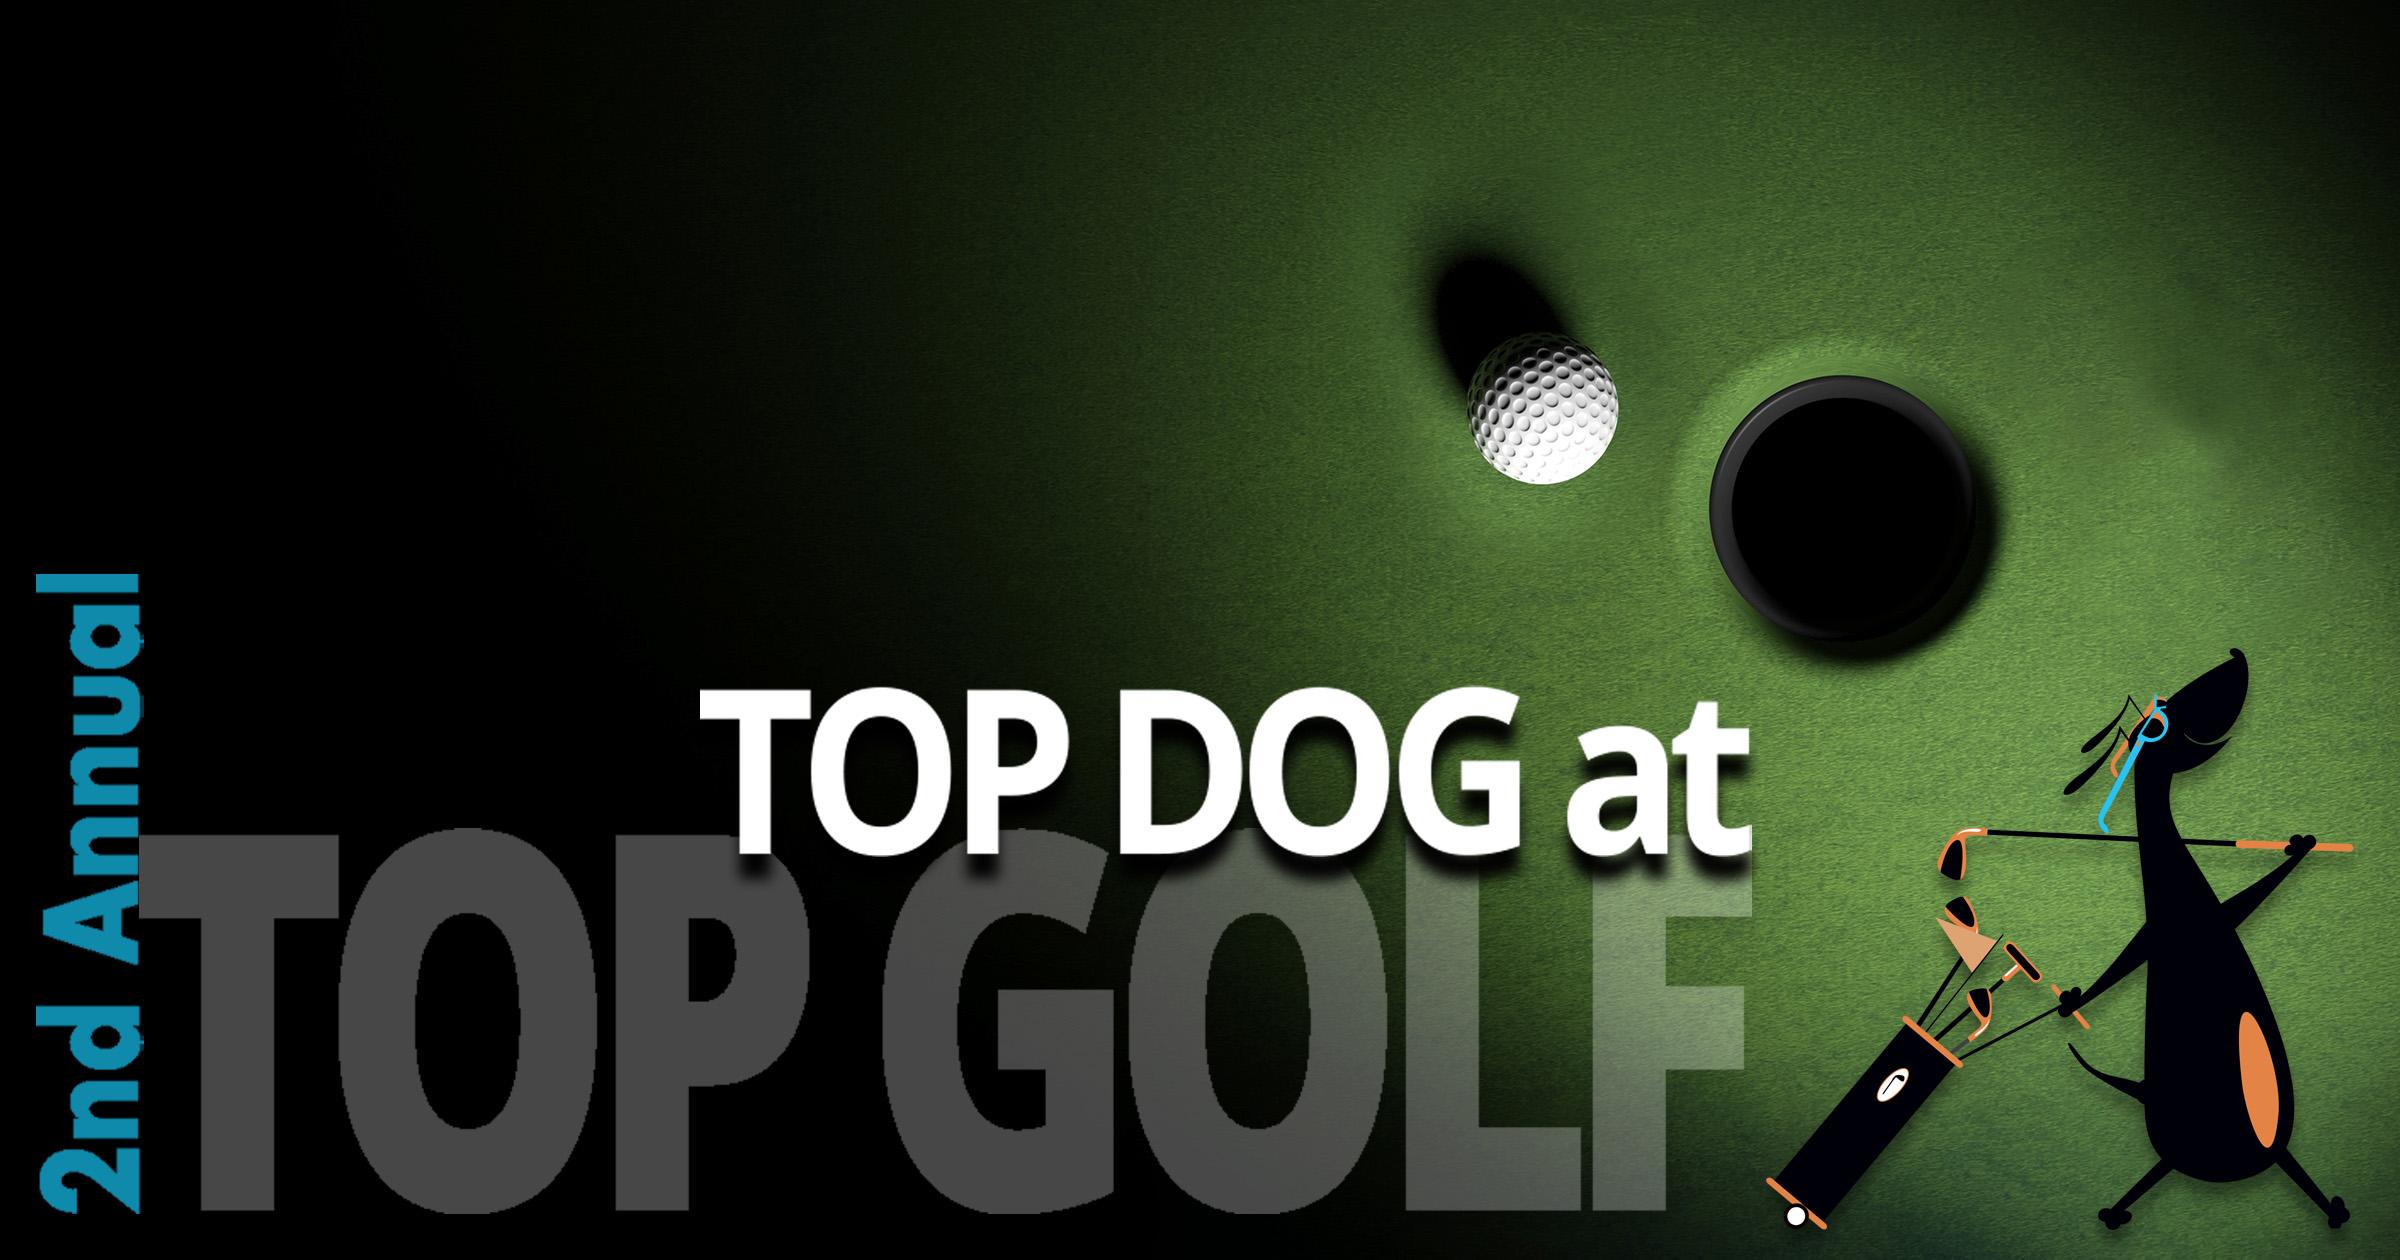 Top Dog @ Top Golf